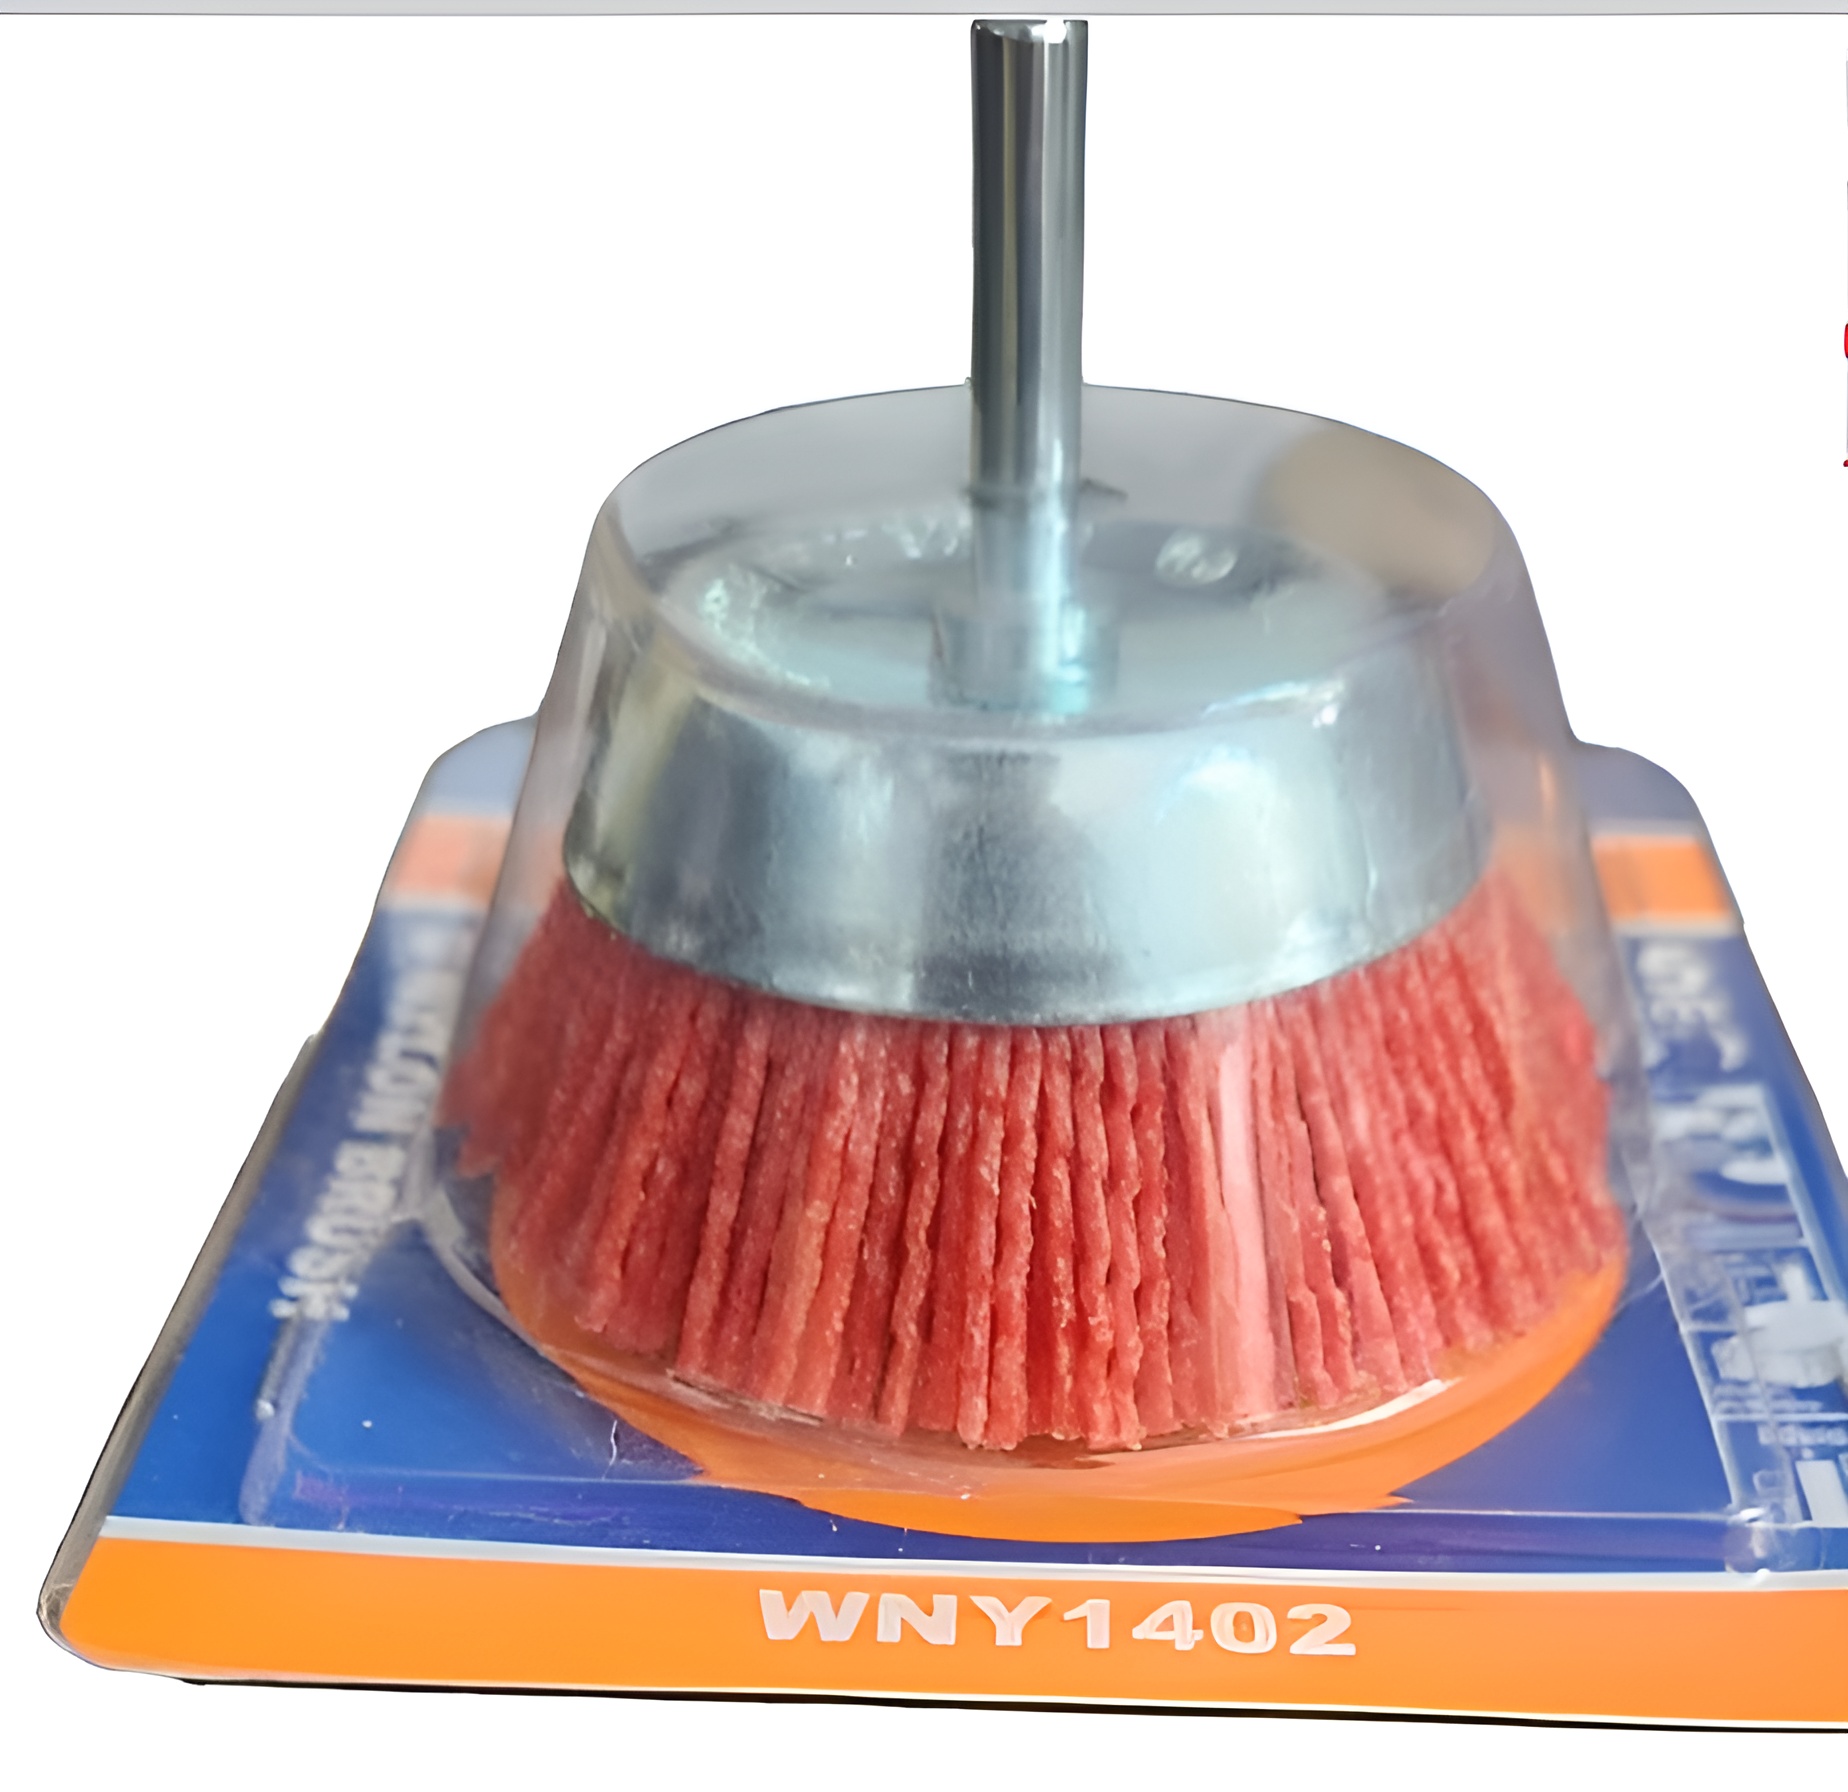 Hình ảnh 2 của mặt hàng Chén cước nylon 75mm(3") Wadfow WNY1402